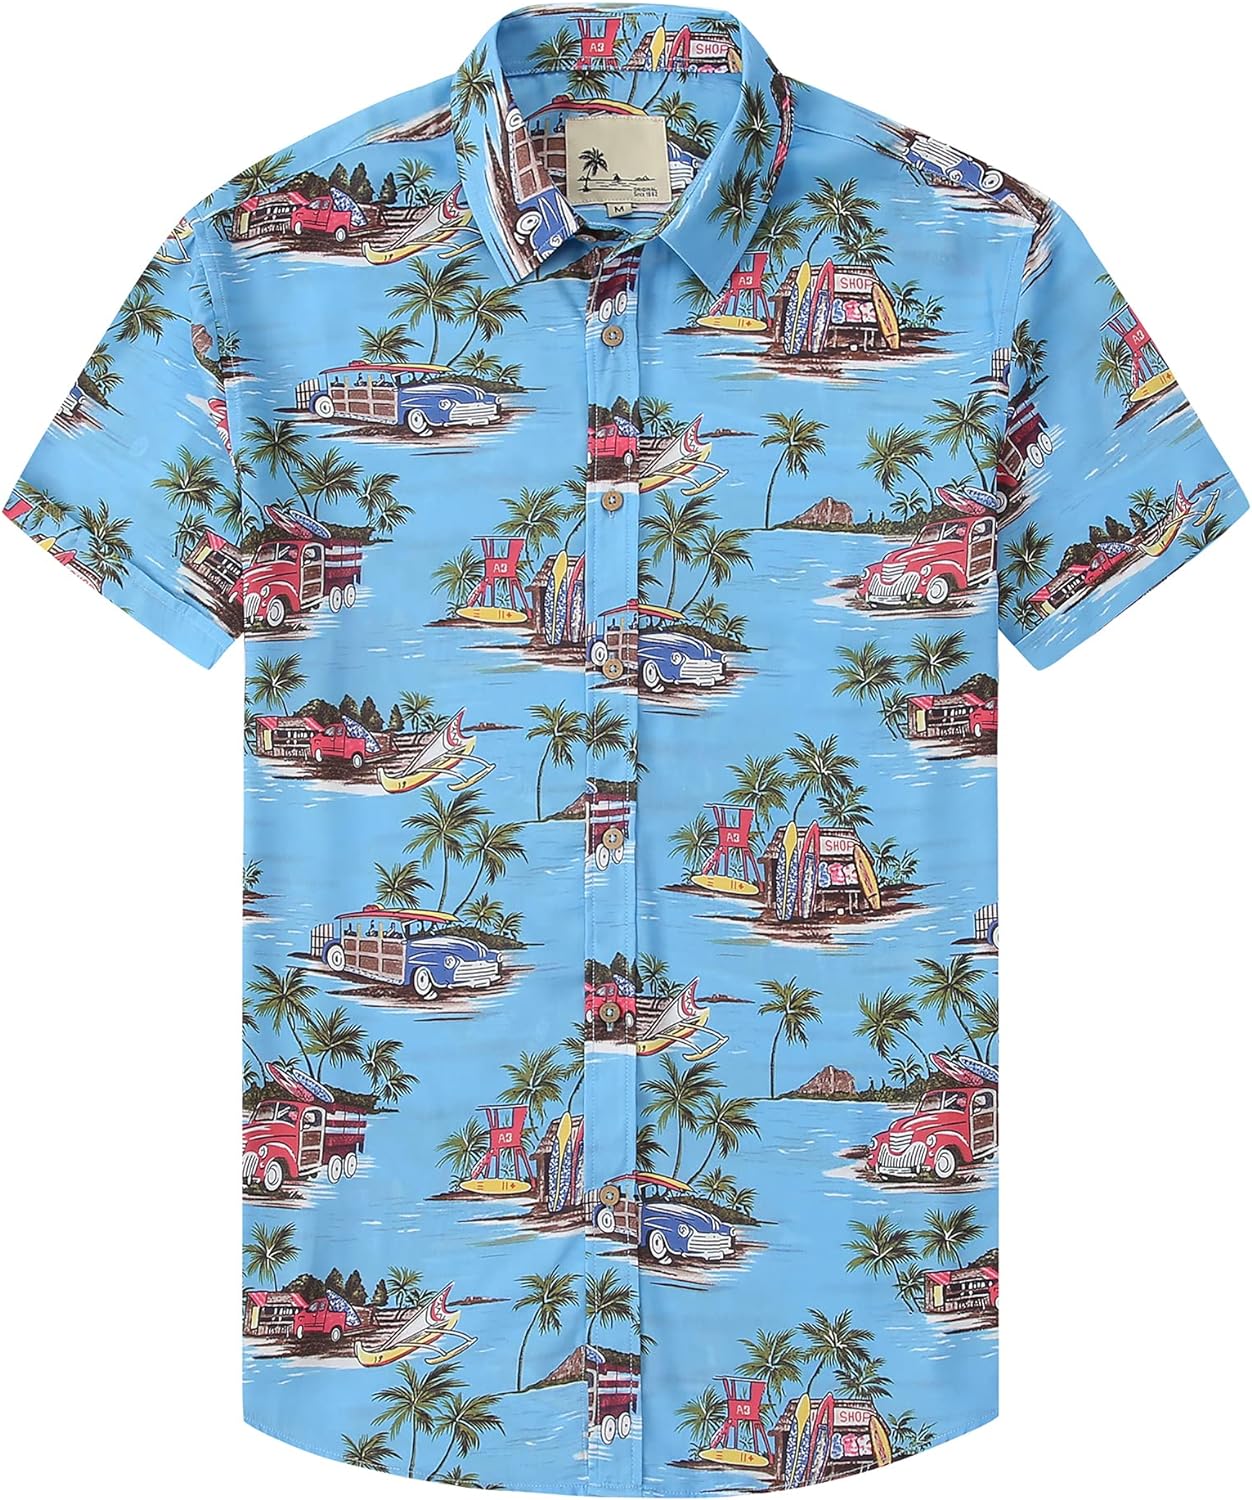 YYear Mens Beach Floral Print Short Sleeve Button Up Summer Hawaii Shirt 